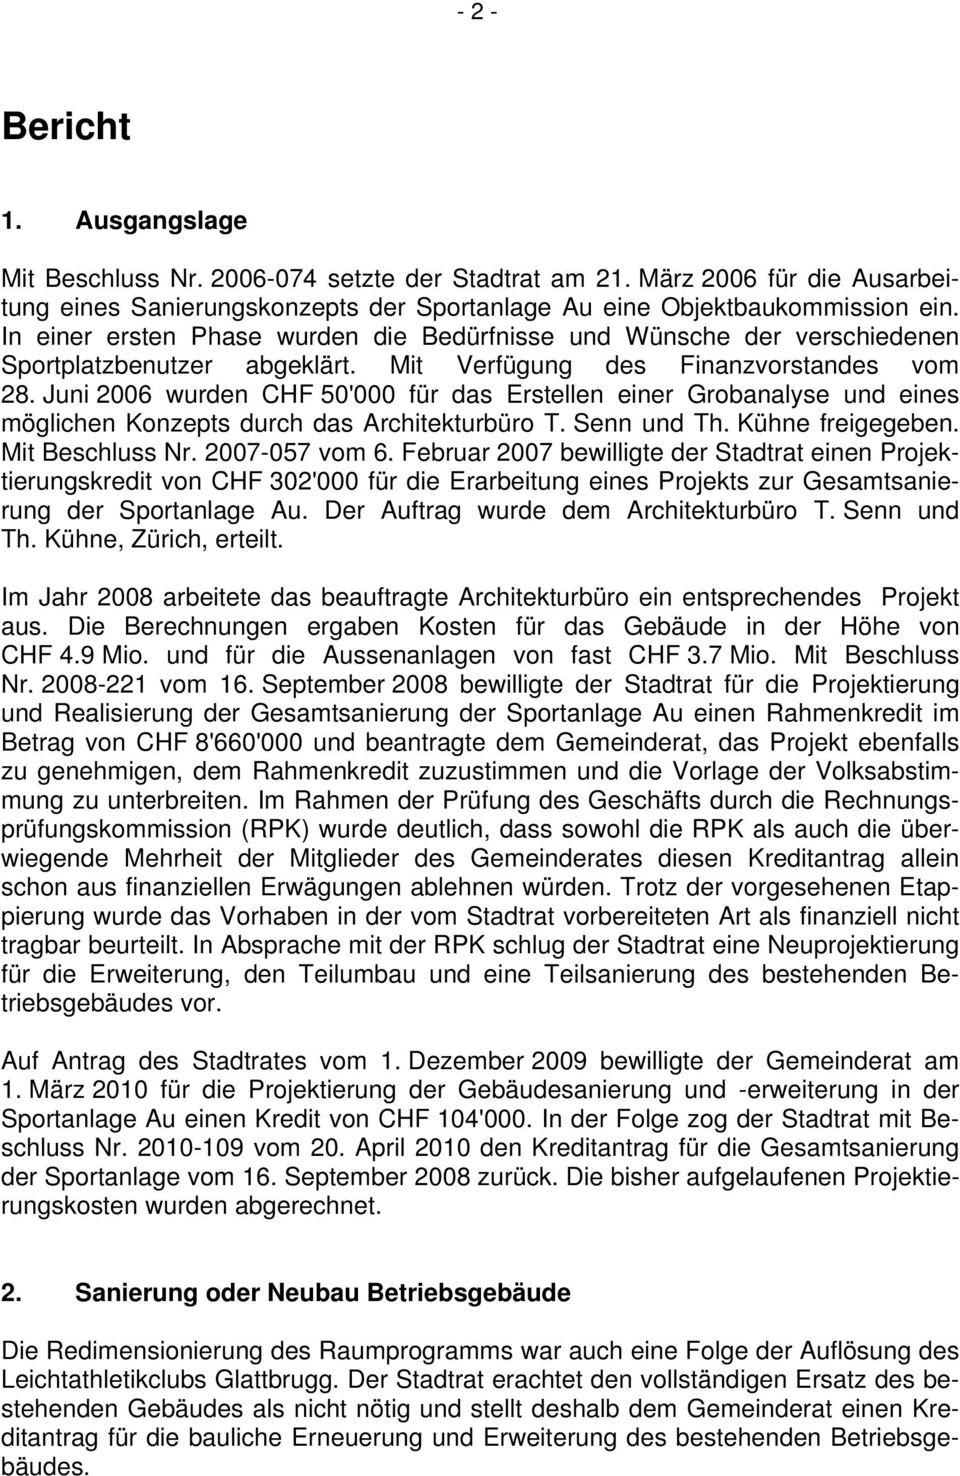 Juni 2006 wurden CHF 50'000 für das Erstellen einer Grobanalyse und eines möglichen Konzepts durch das Architekturbüro T. Senn und Th. Kühne freigegeben. Mit Beschluss Nr. 2007-057 vom 6.